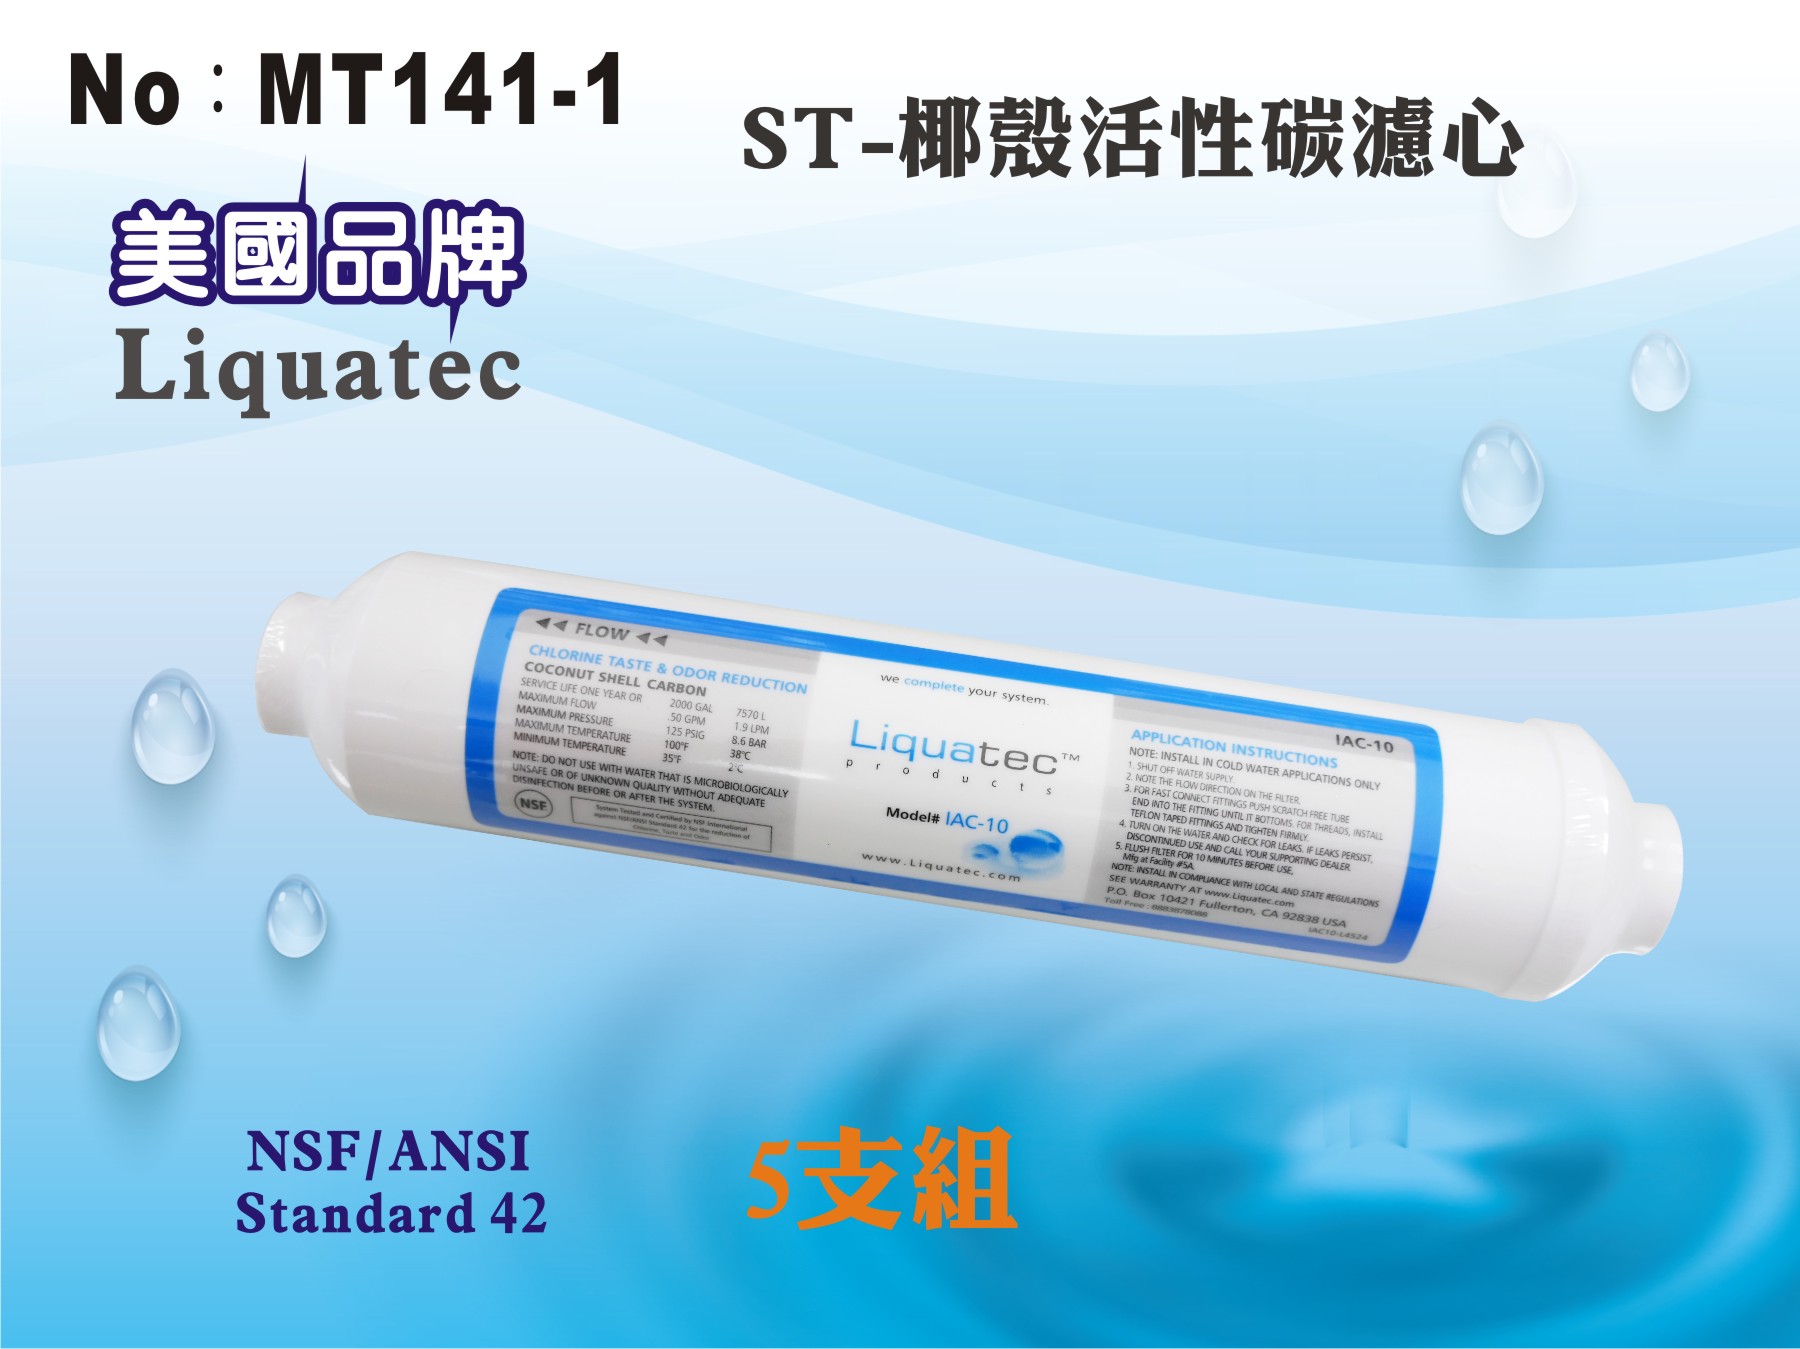 【龍門淨水】ST-NSF高品質活性碳濾心 美國Liquatec NSF42 後置濾心5支組RO機淨水器(MT141-1)